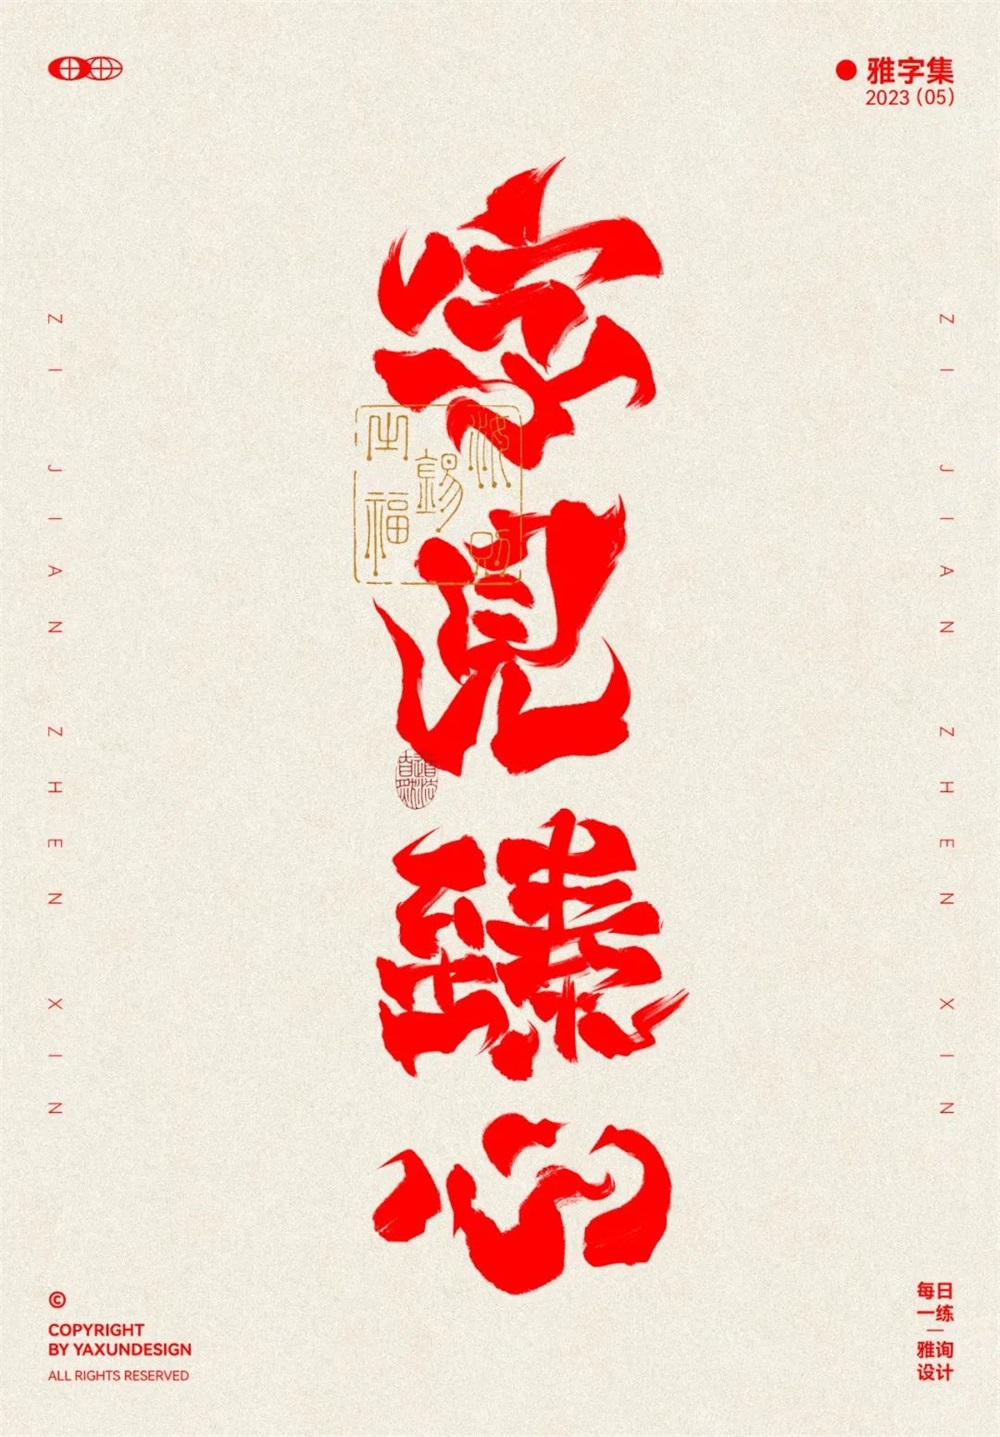 字见臻心！29张中文命题字体设计